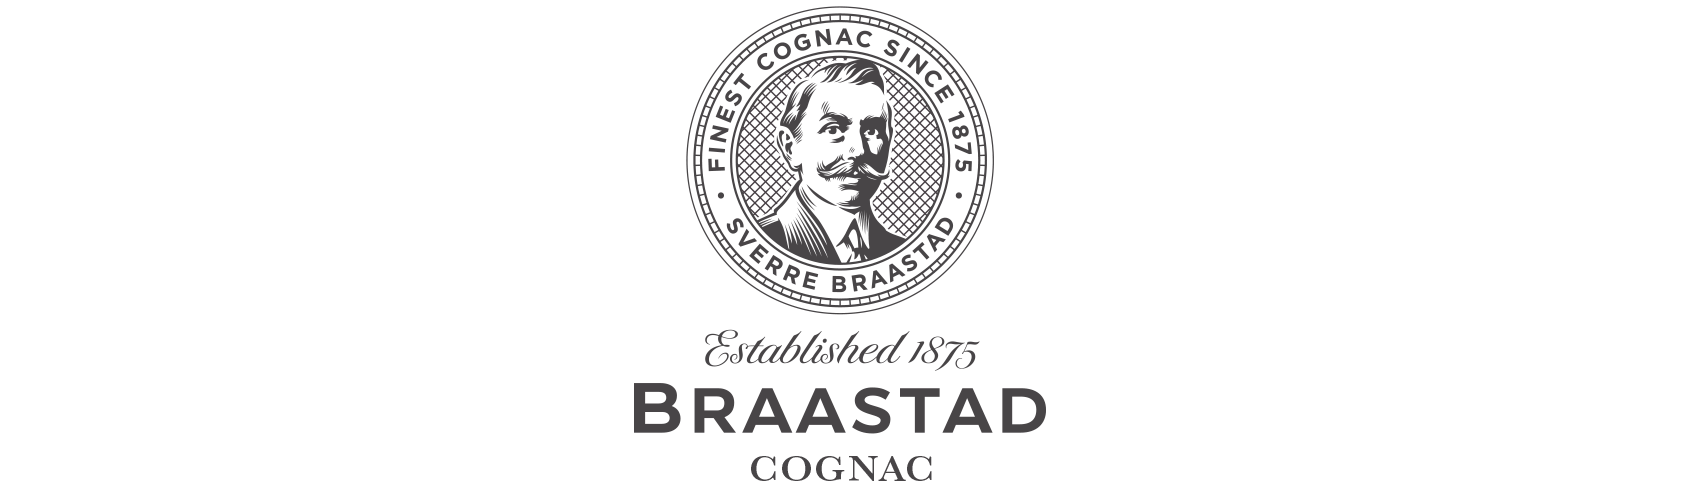 Braastad cognac logo. Visuell identitet visual identity.